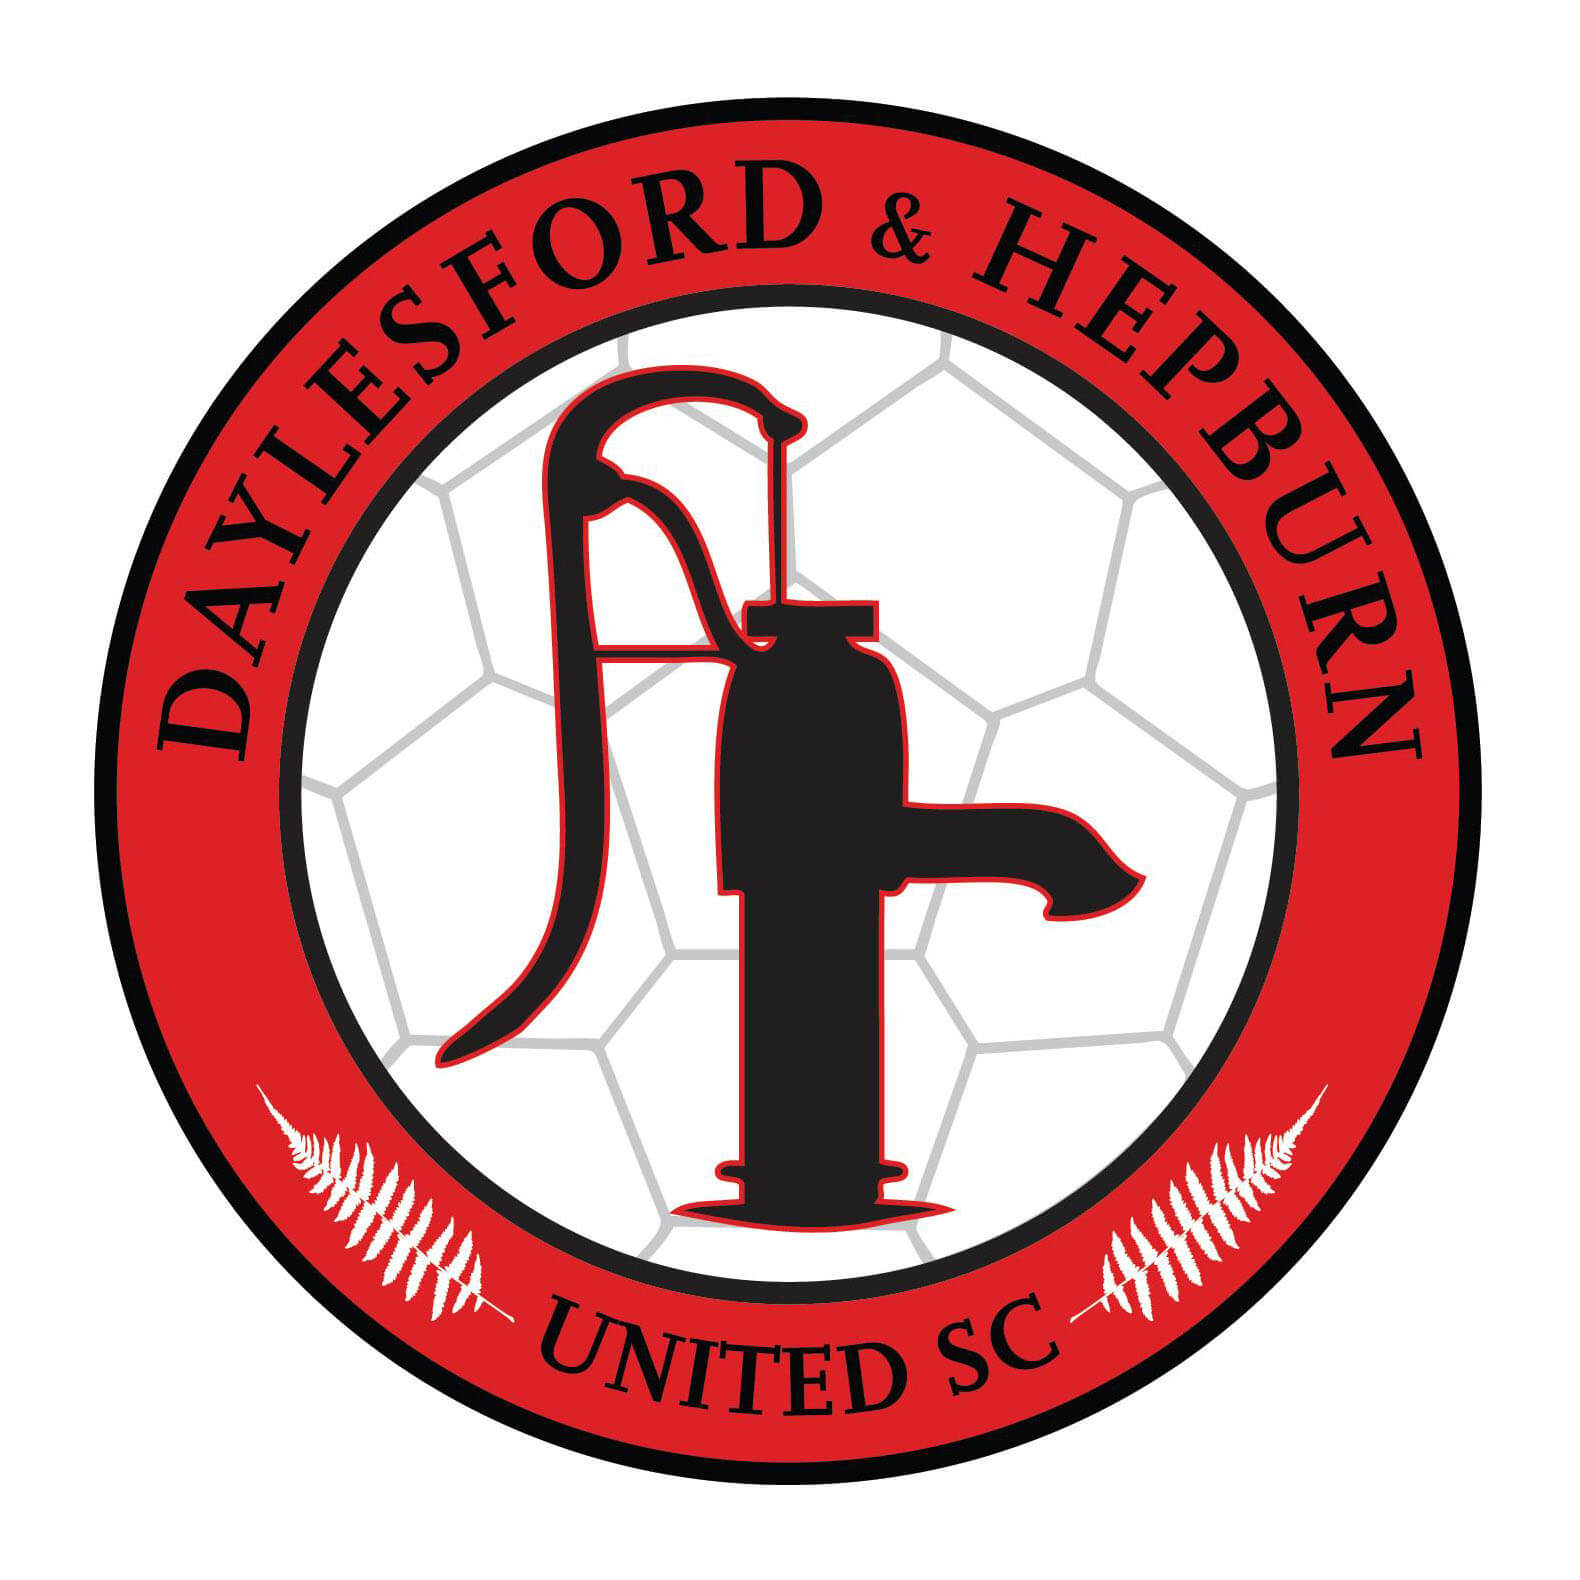 Daylesford & Hepburn United S.C.